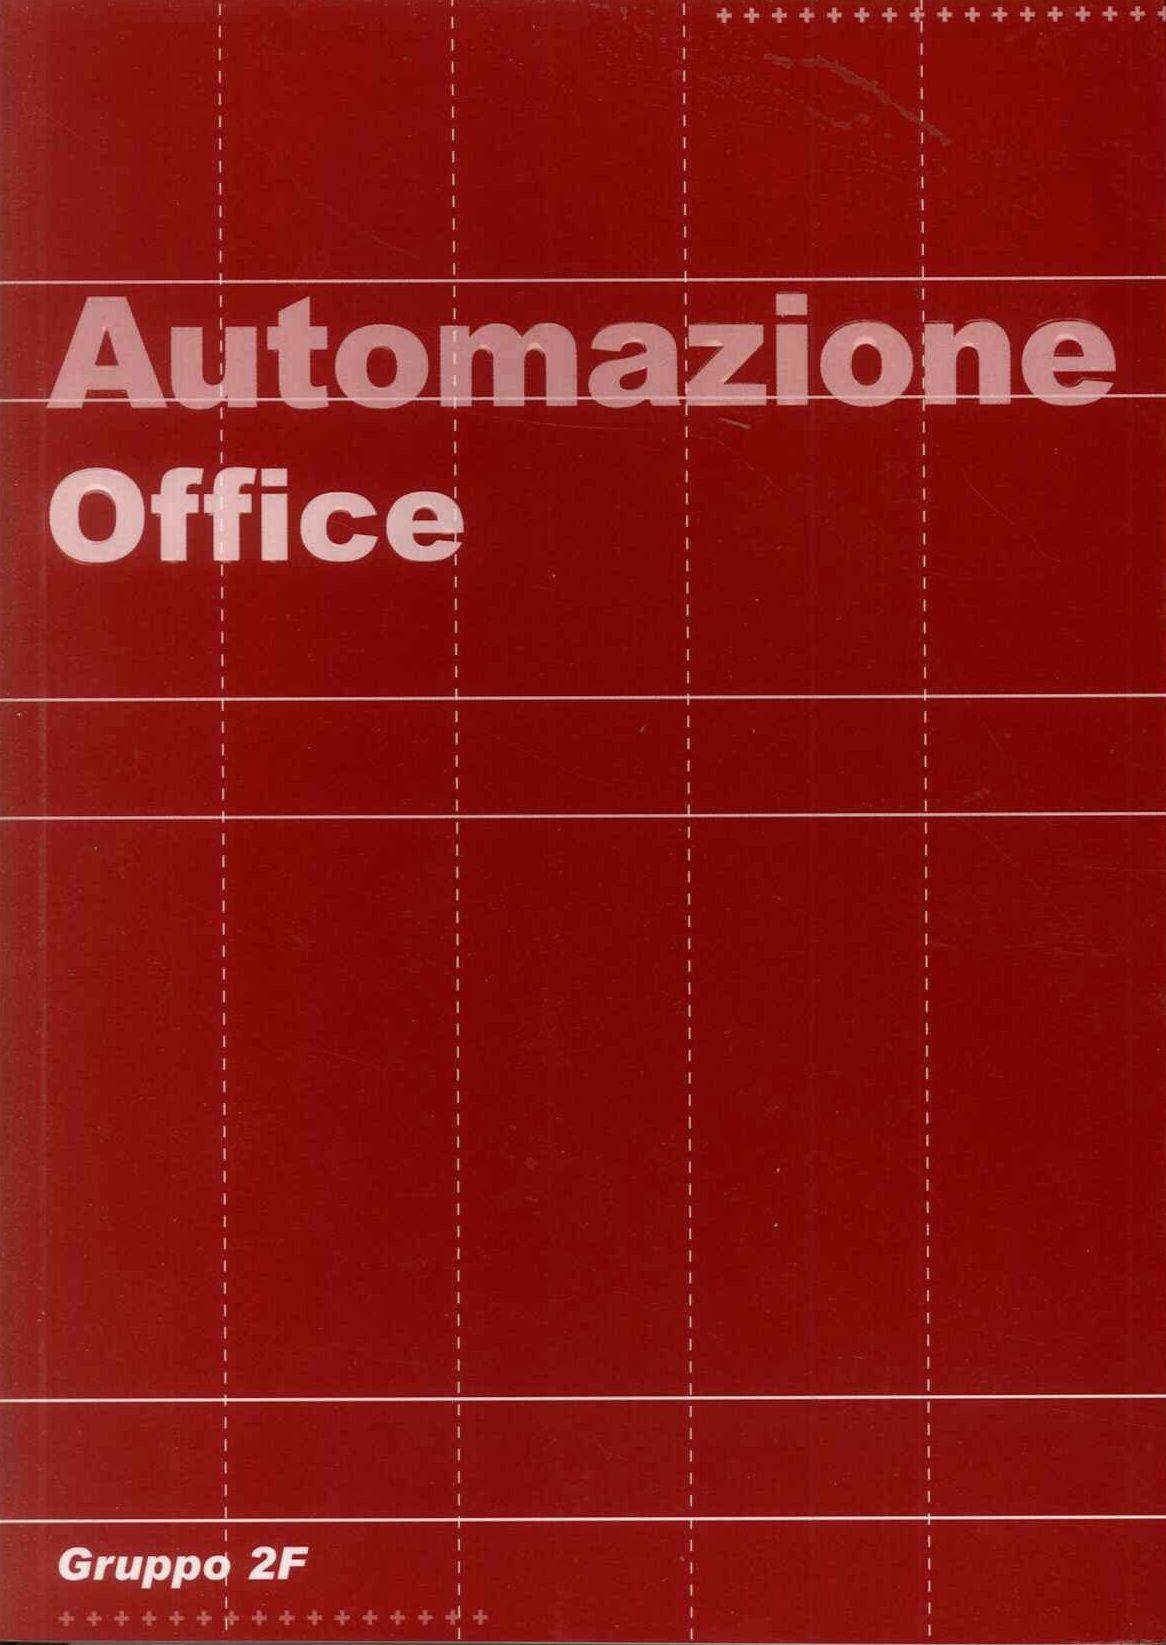 Automazione Office